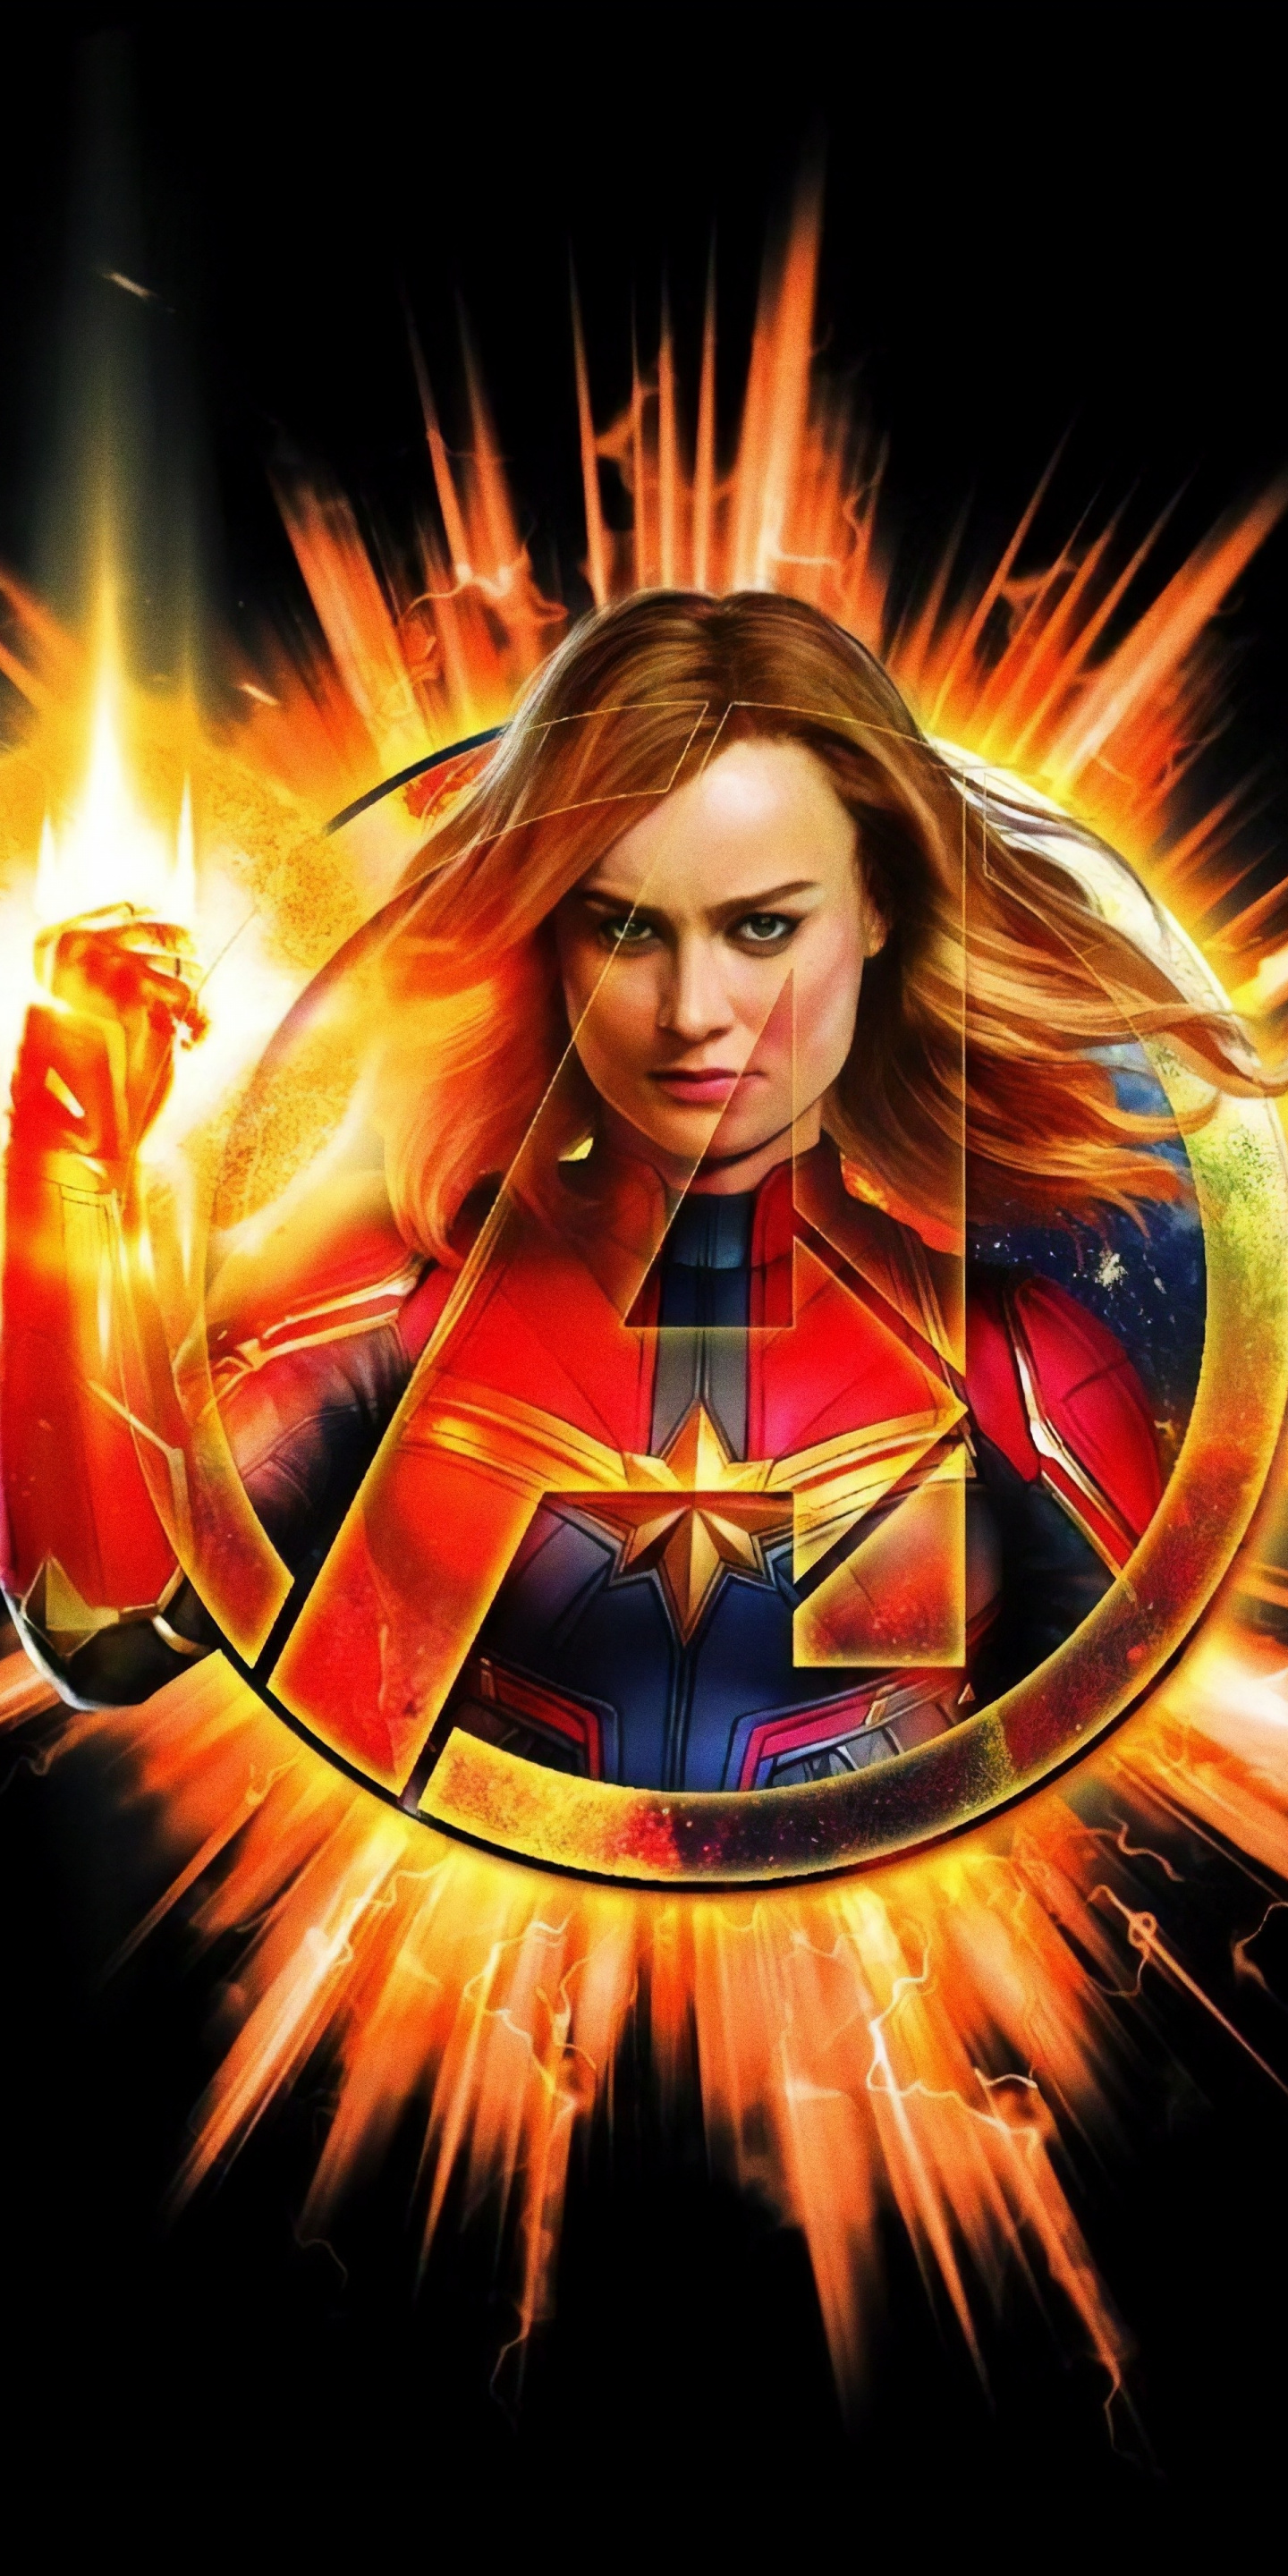 Download Avengers: Endgame, Captain Marvel, artwork, 2018